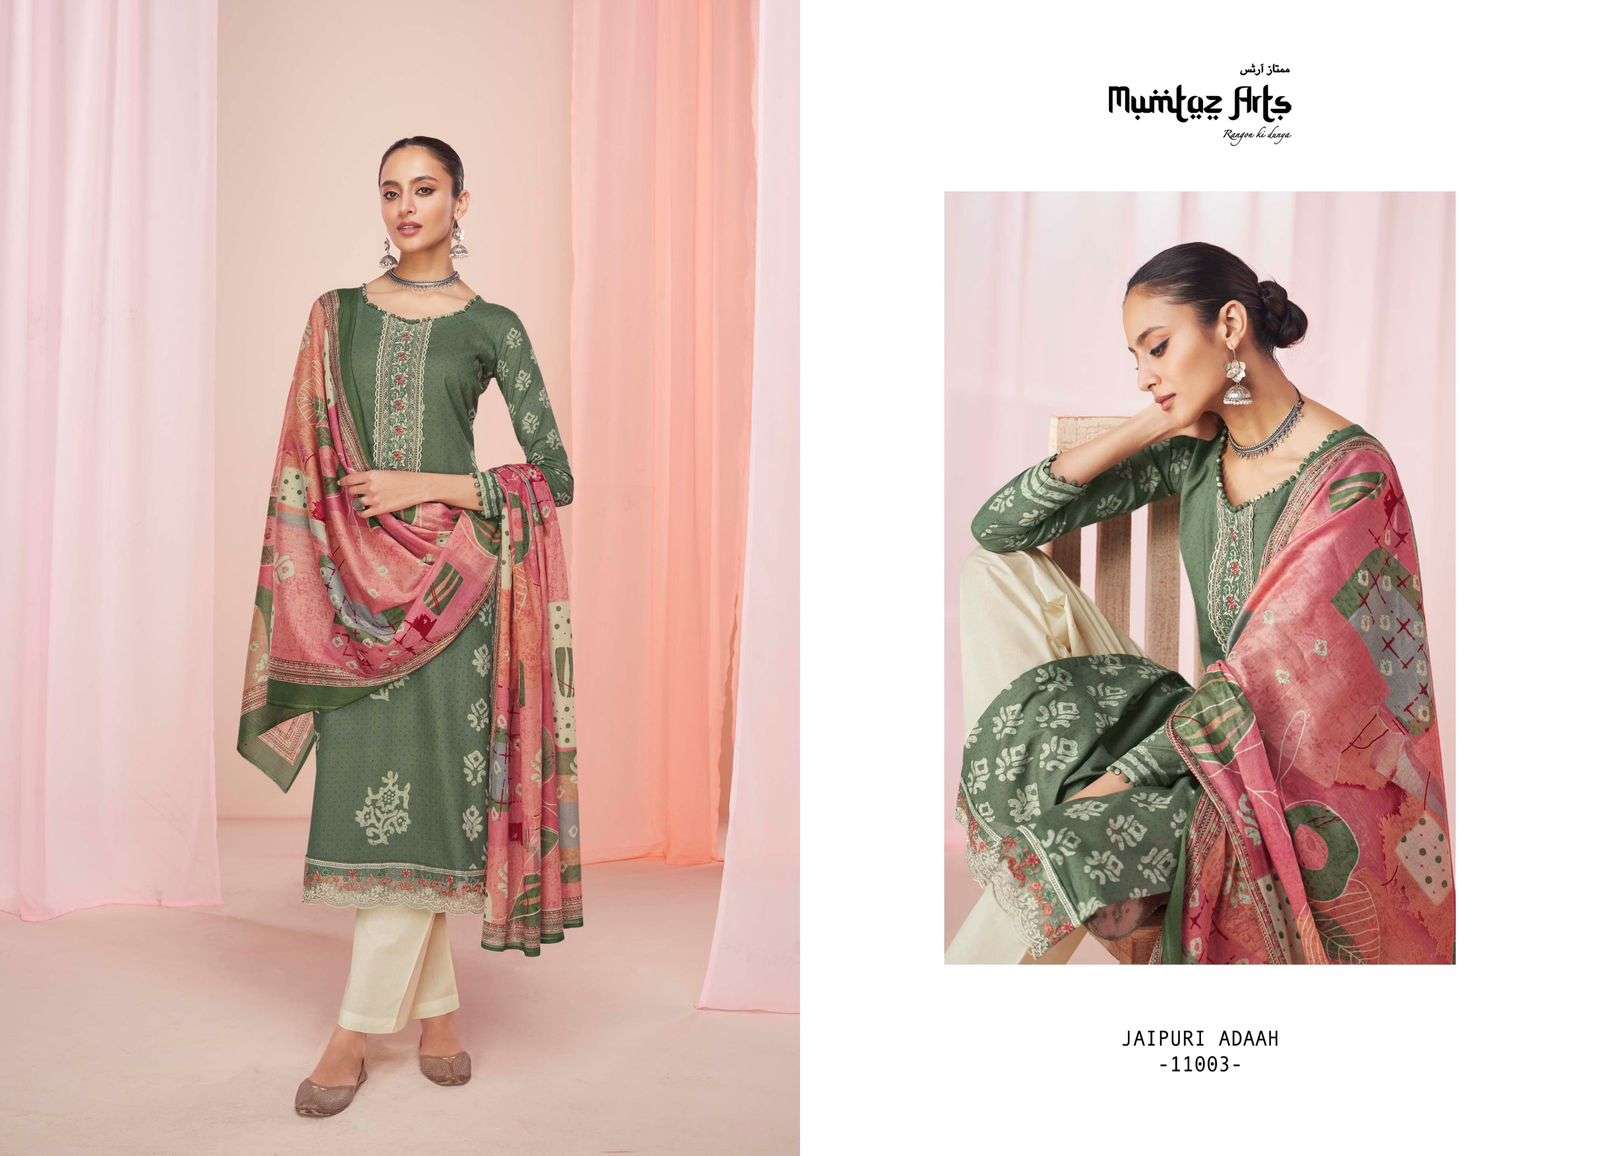 mumtaz arts jaipuri adaah nx stylish designer salwar suits online supplier surat 